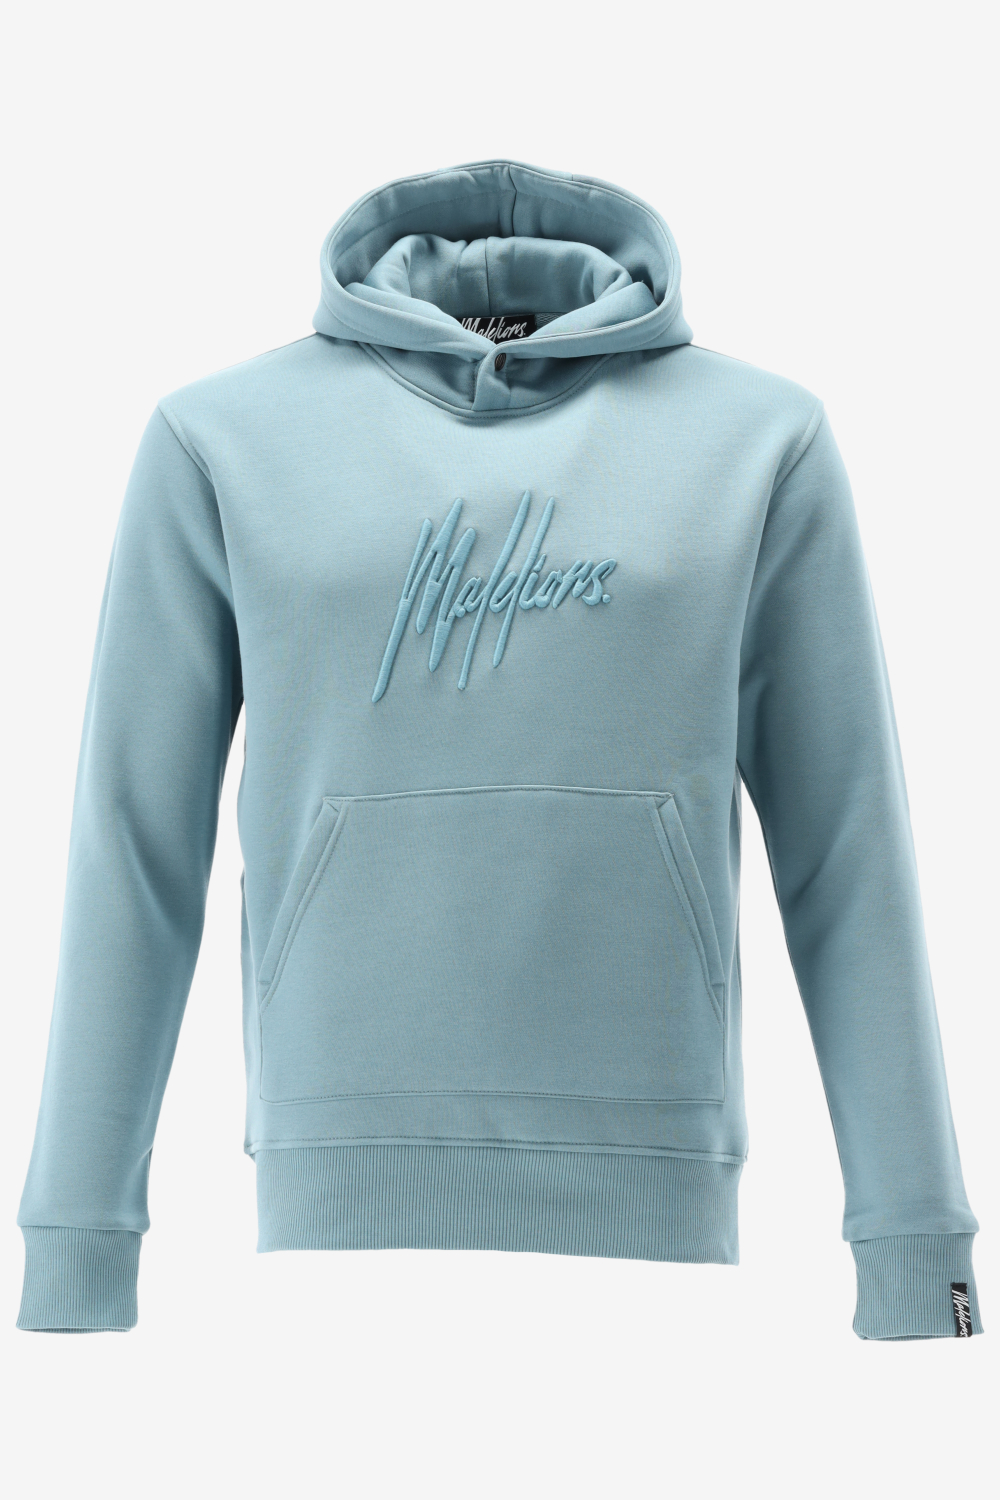 Malelions hoodie essentials hoodie maat S